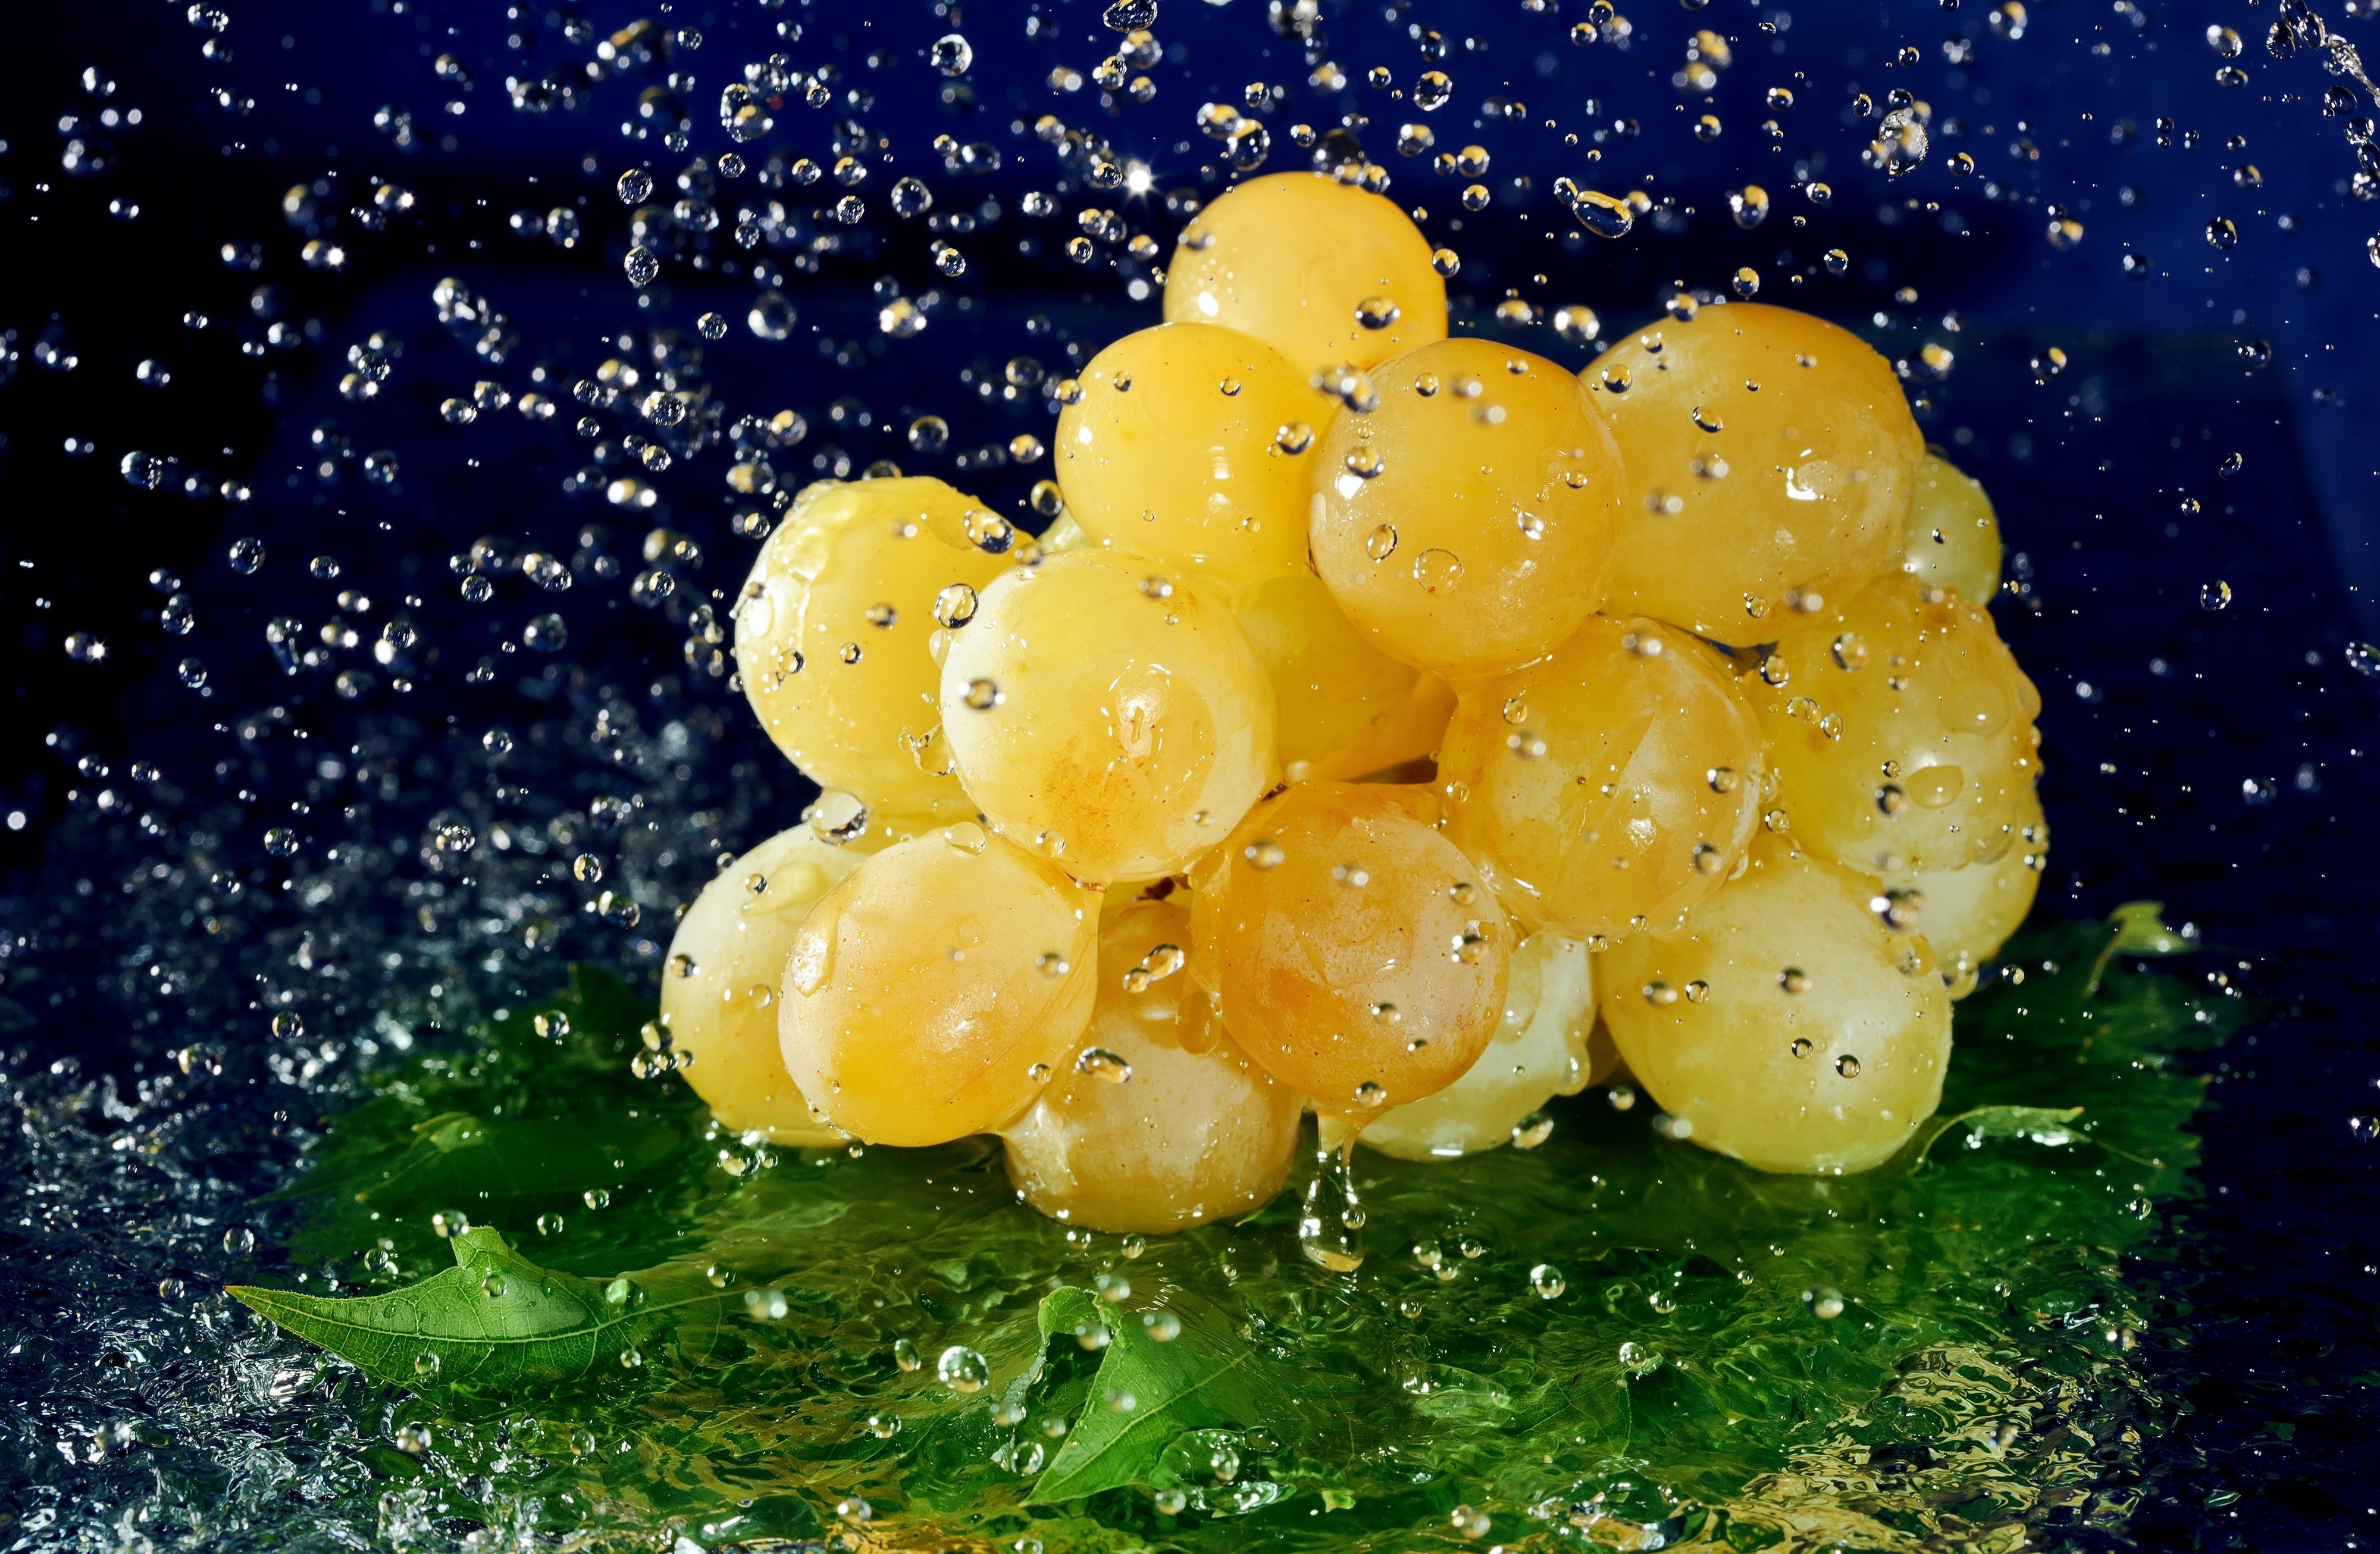 General 4000x2612 water drops fruit grapes food wet yellow berries closeup macro